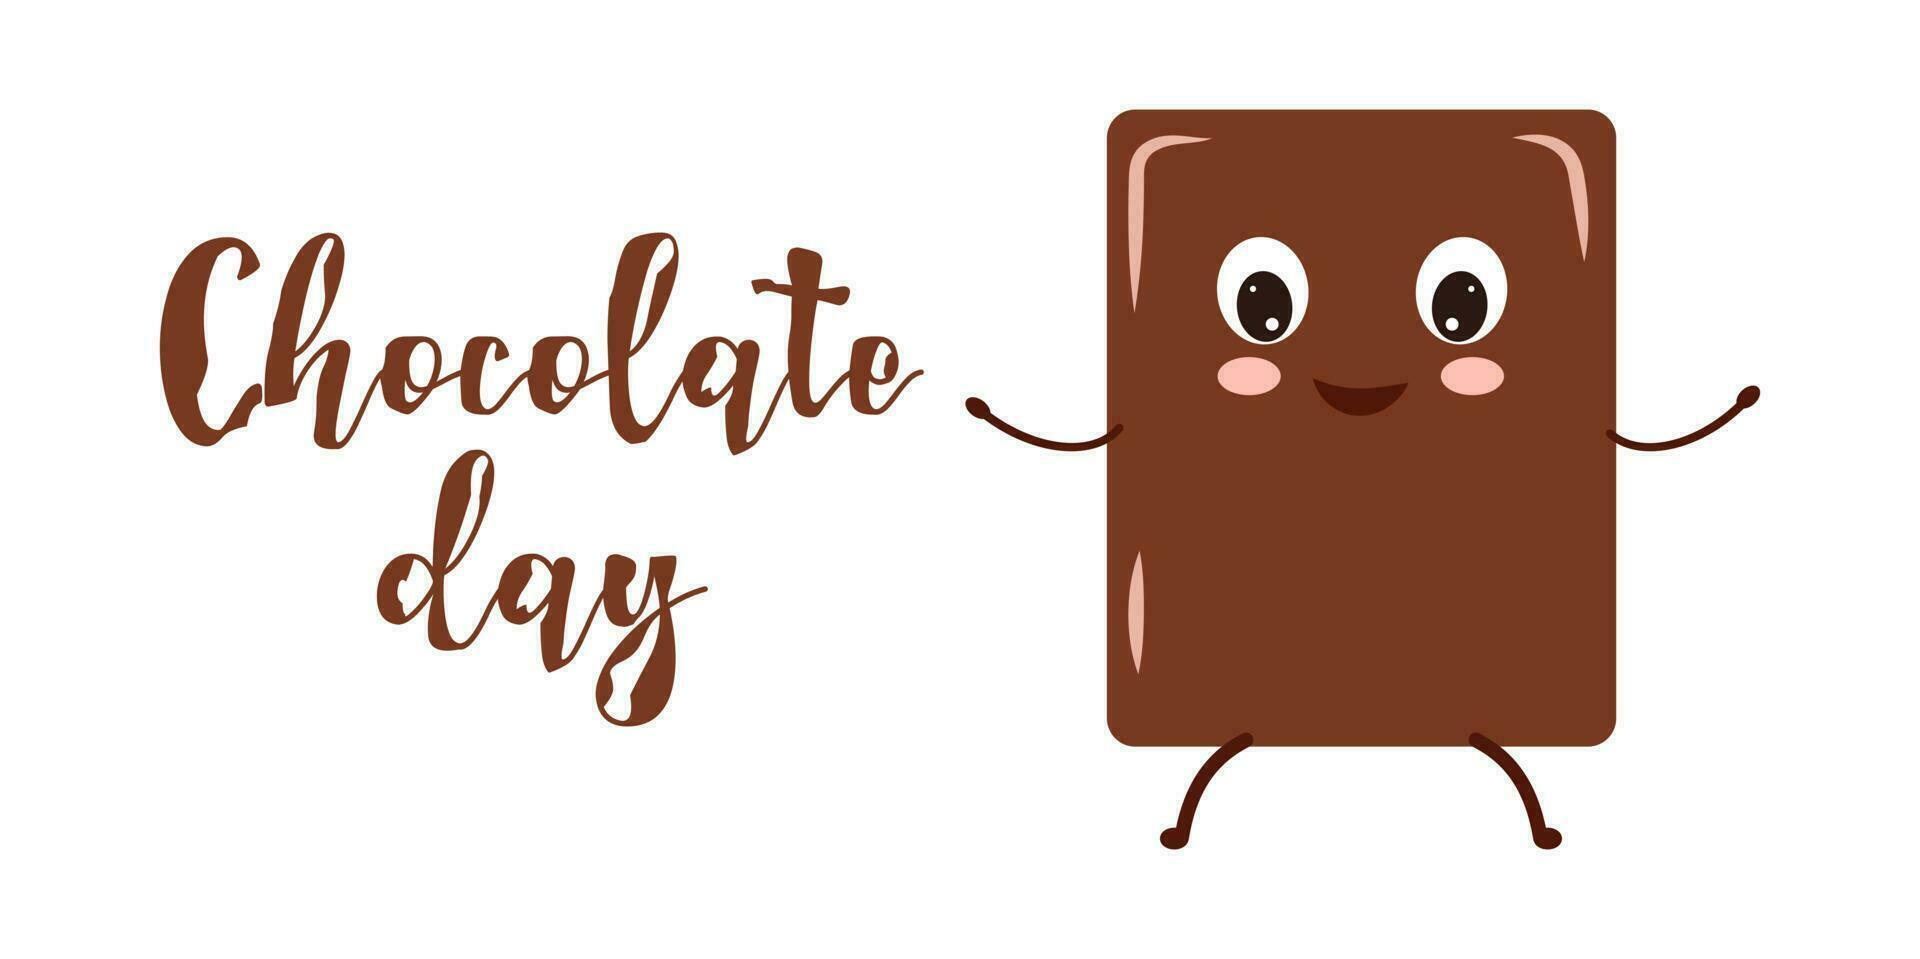 Chocolat jour.chocolat personnage conception avec texte vecteur